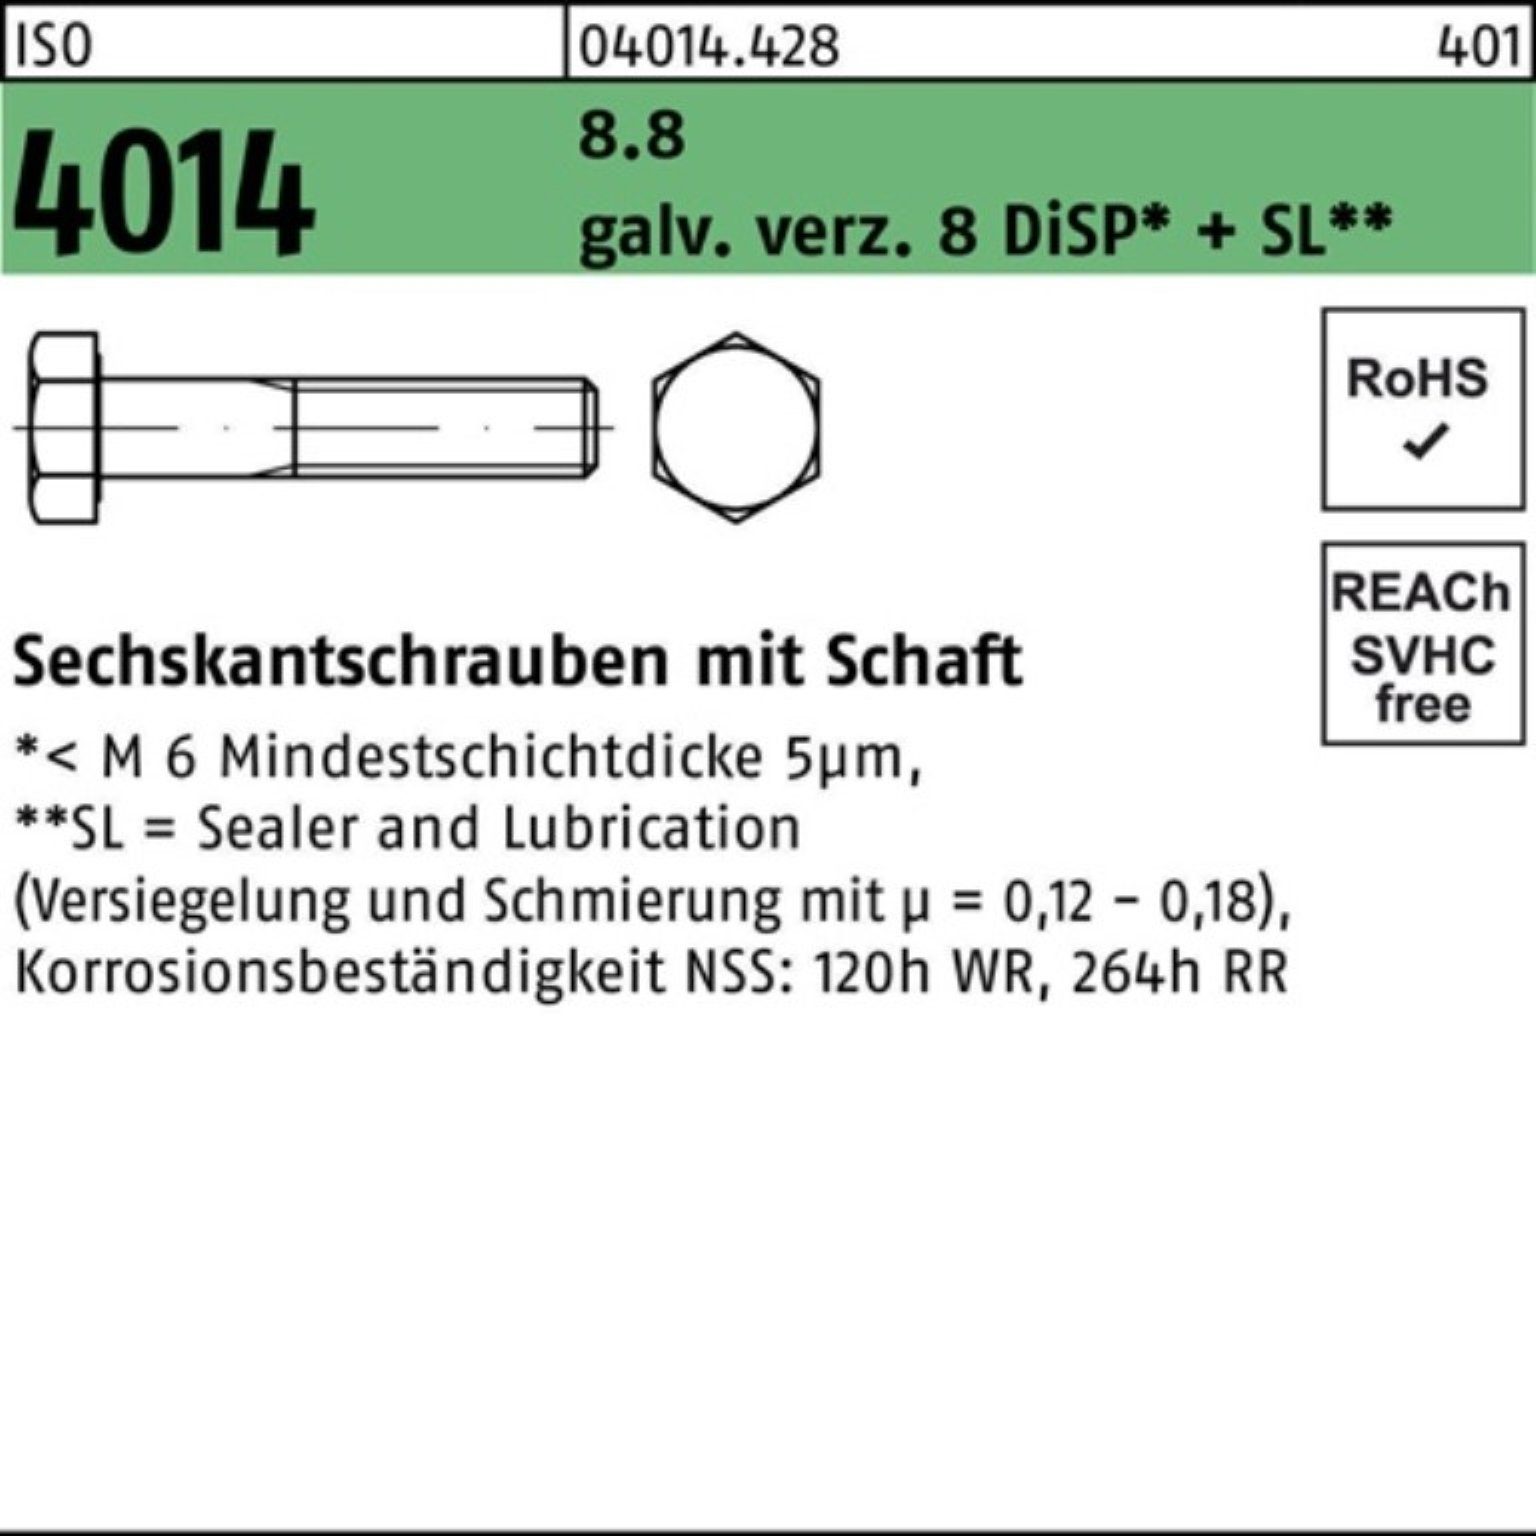 Bufab Sechskantschraube 100er Pack Sechskantschraube ISO 4014 Schaft M6x95 8.8 galv.verz. 8 Di